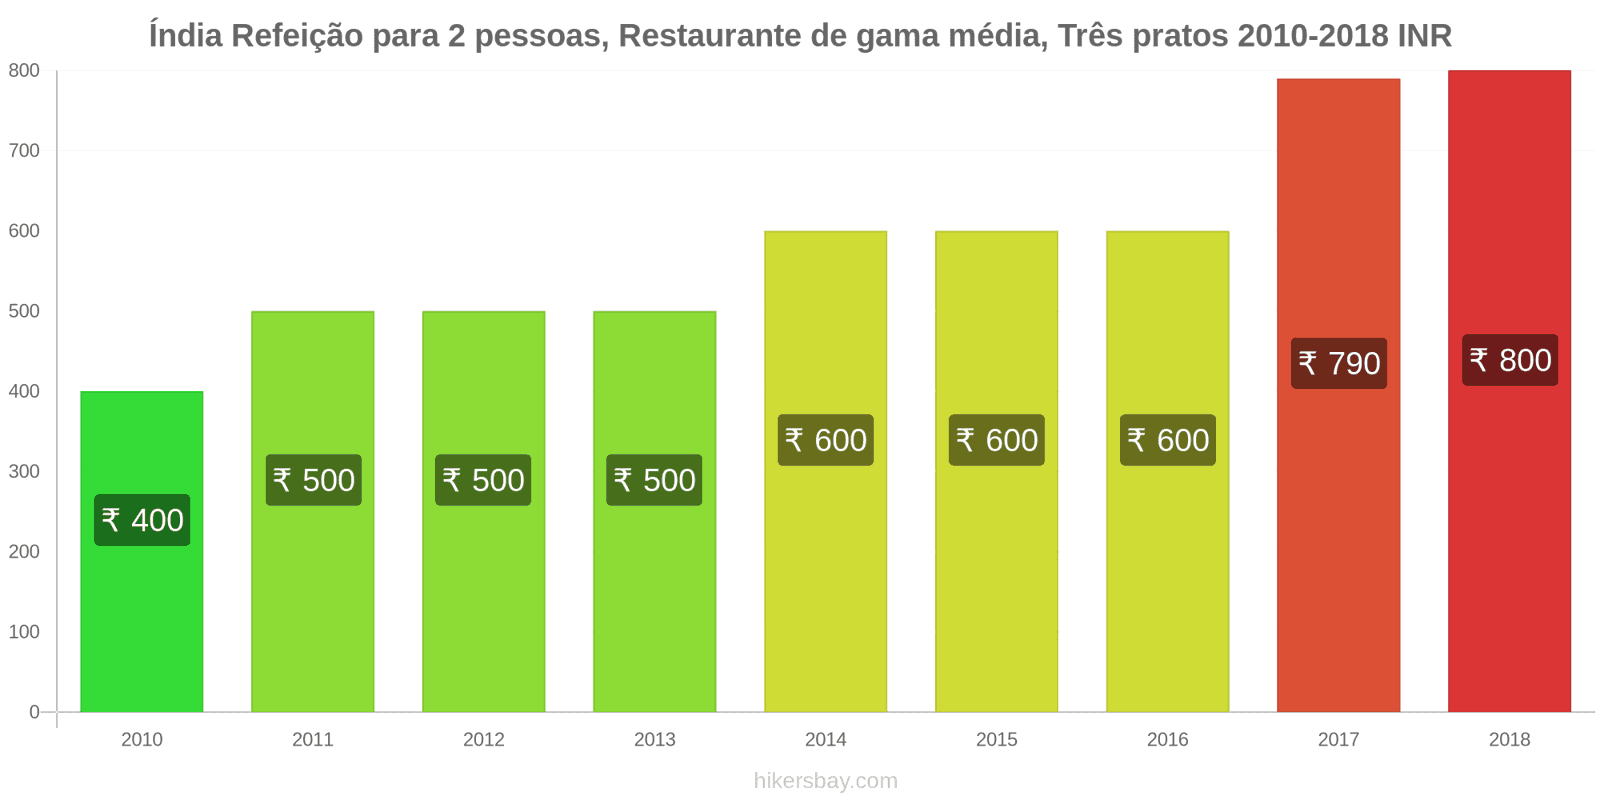 Índia mudanças de preços Refeição para 2 pessoas, restaurante de gama média, três pratos hikersbay.com